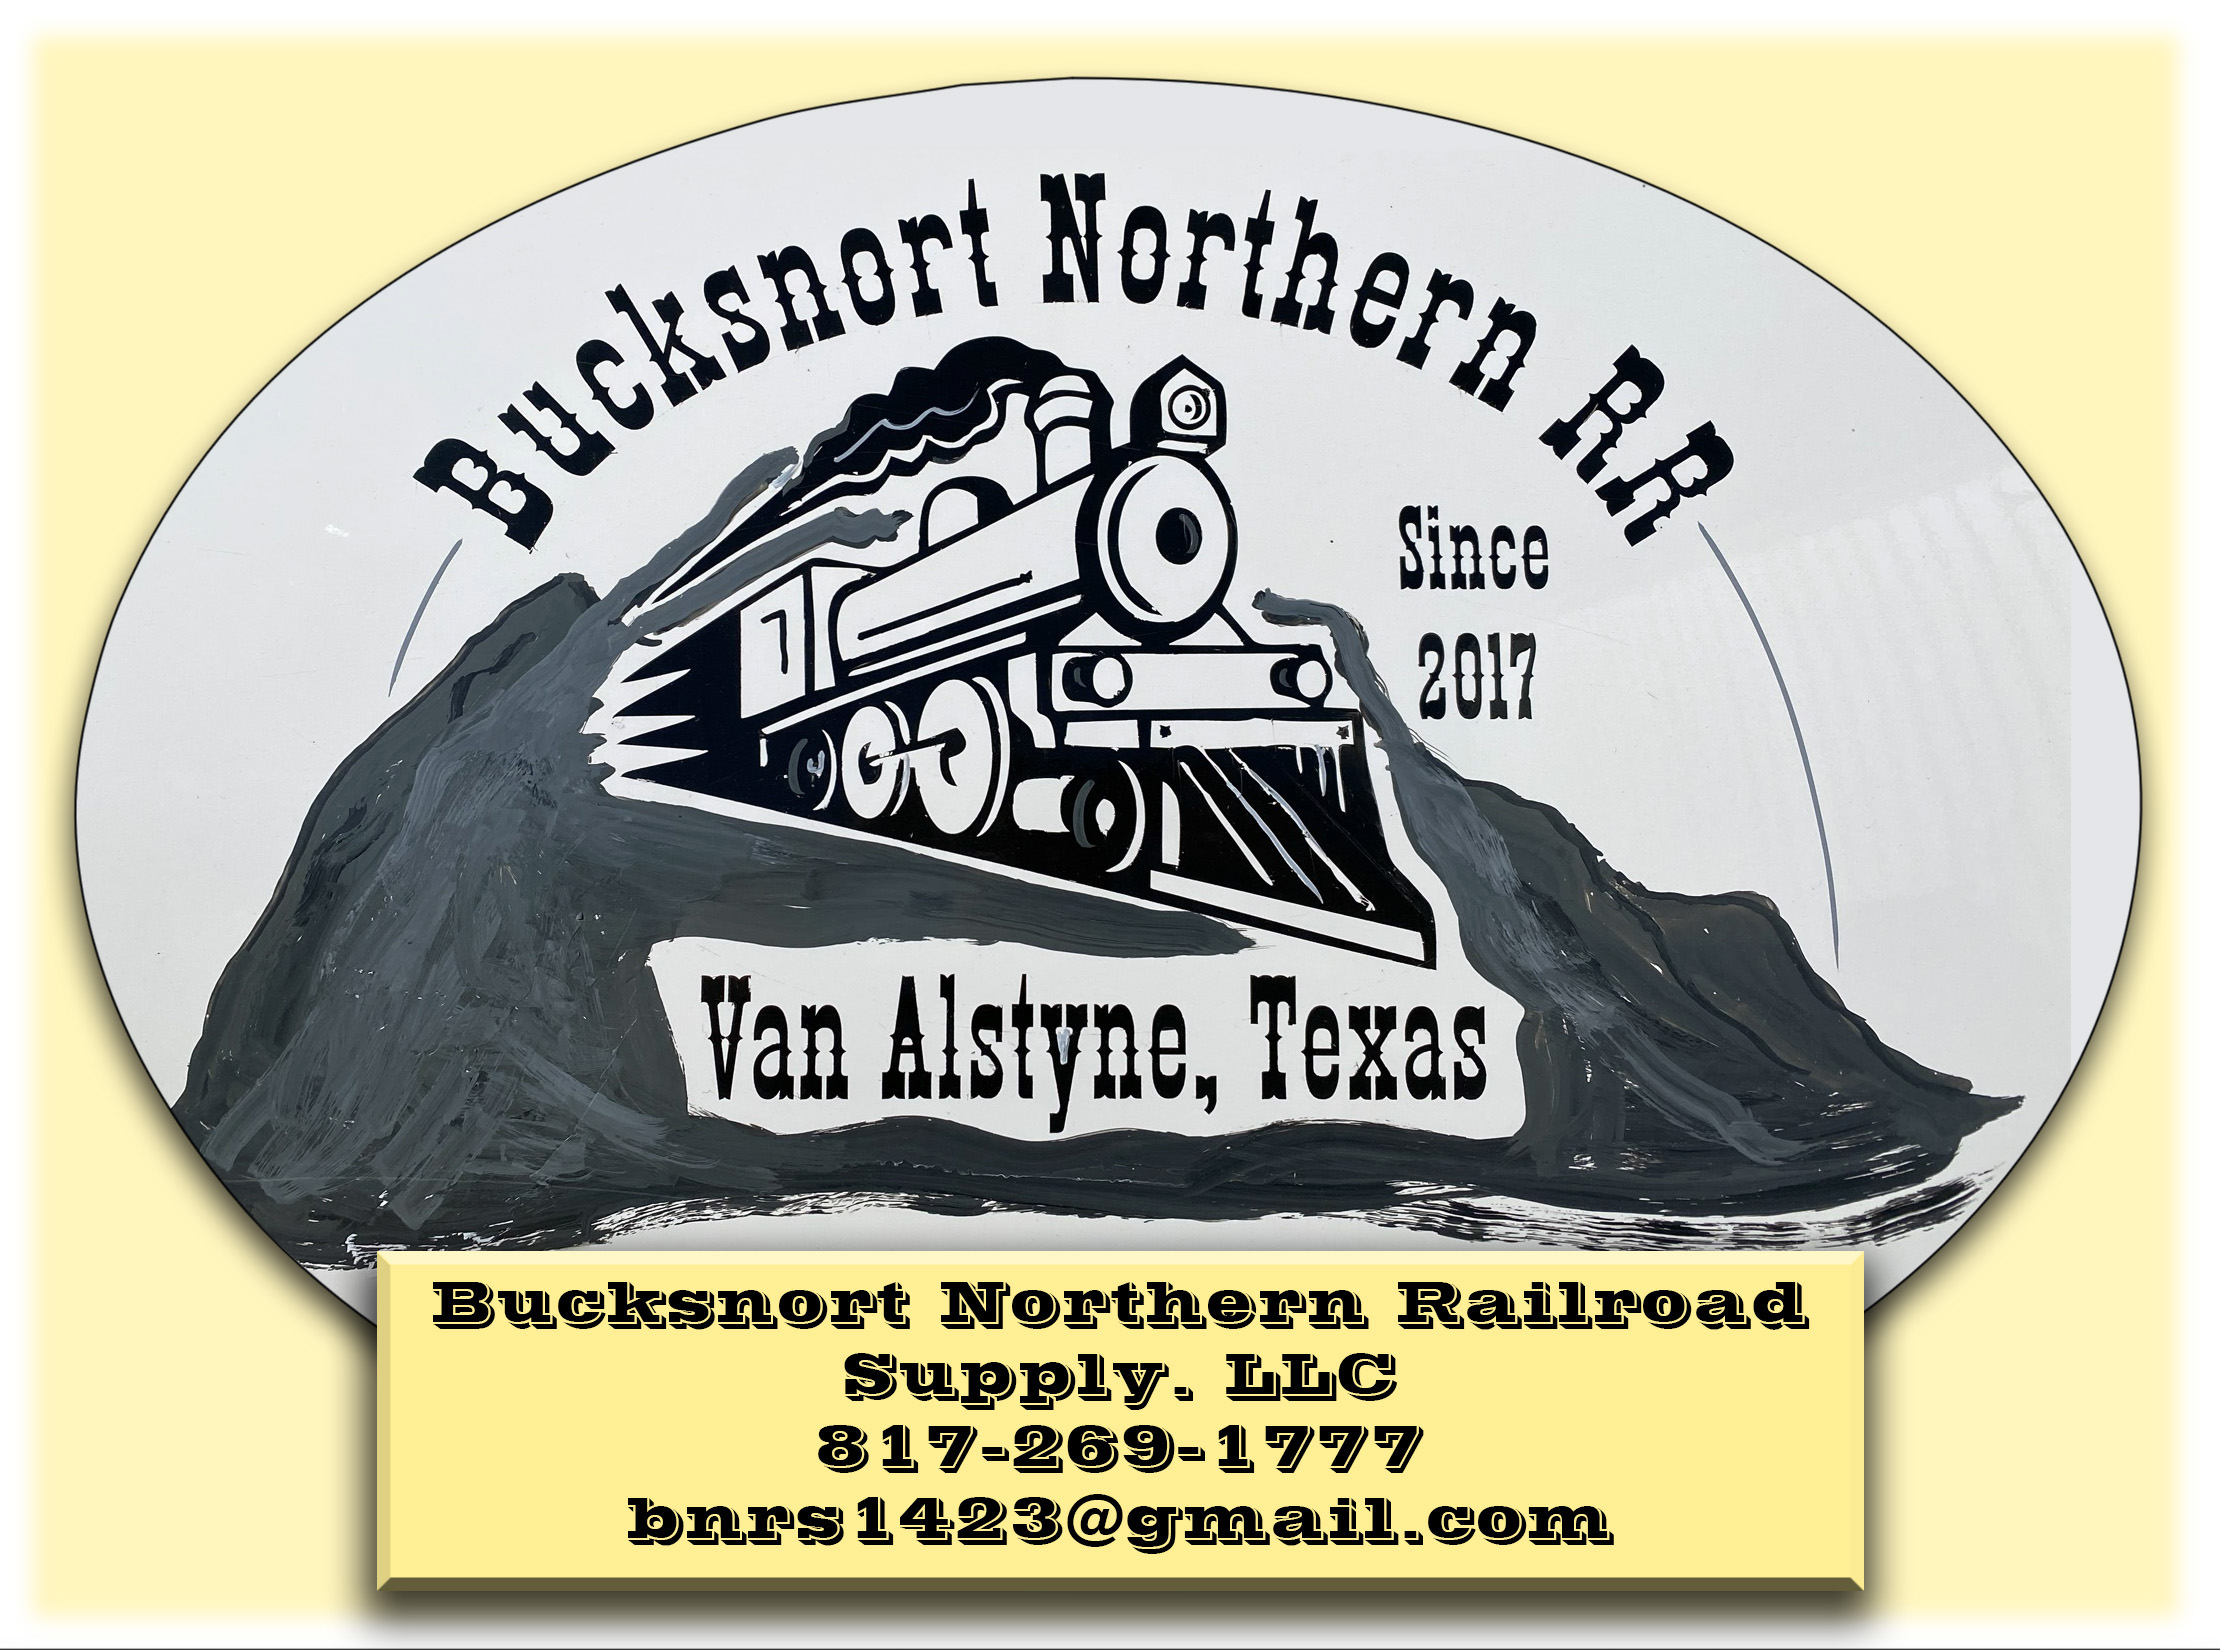 Bucksnort Northern Railroad